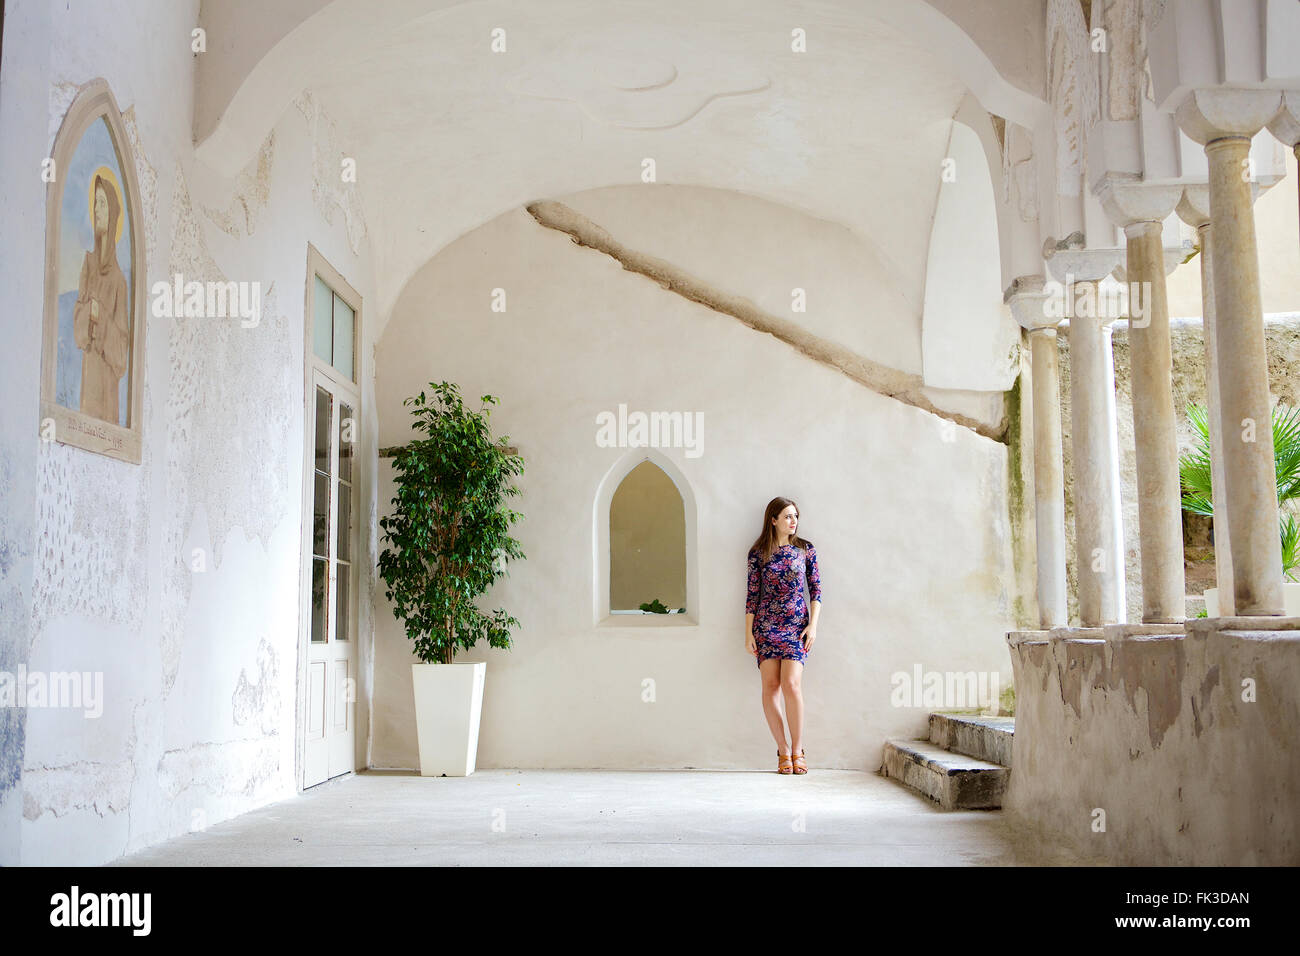 Une jeune femme brune dans le cadre d'un beau, vieux, bâtiment italien méditerranéen. Dans son entourage, Côte Amalfitaine. Banque D'Images